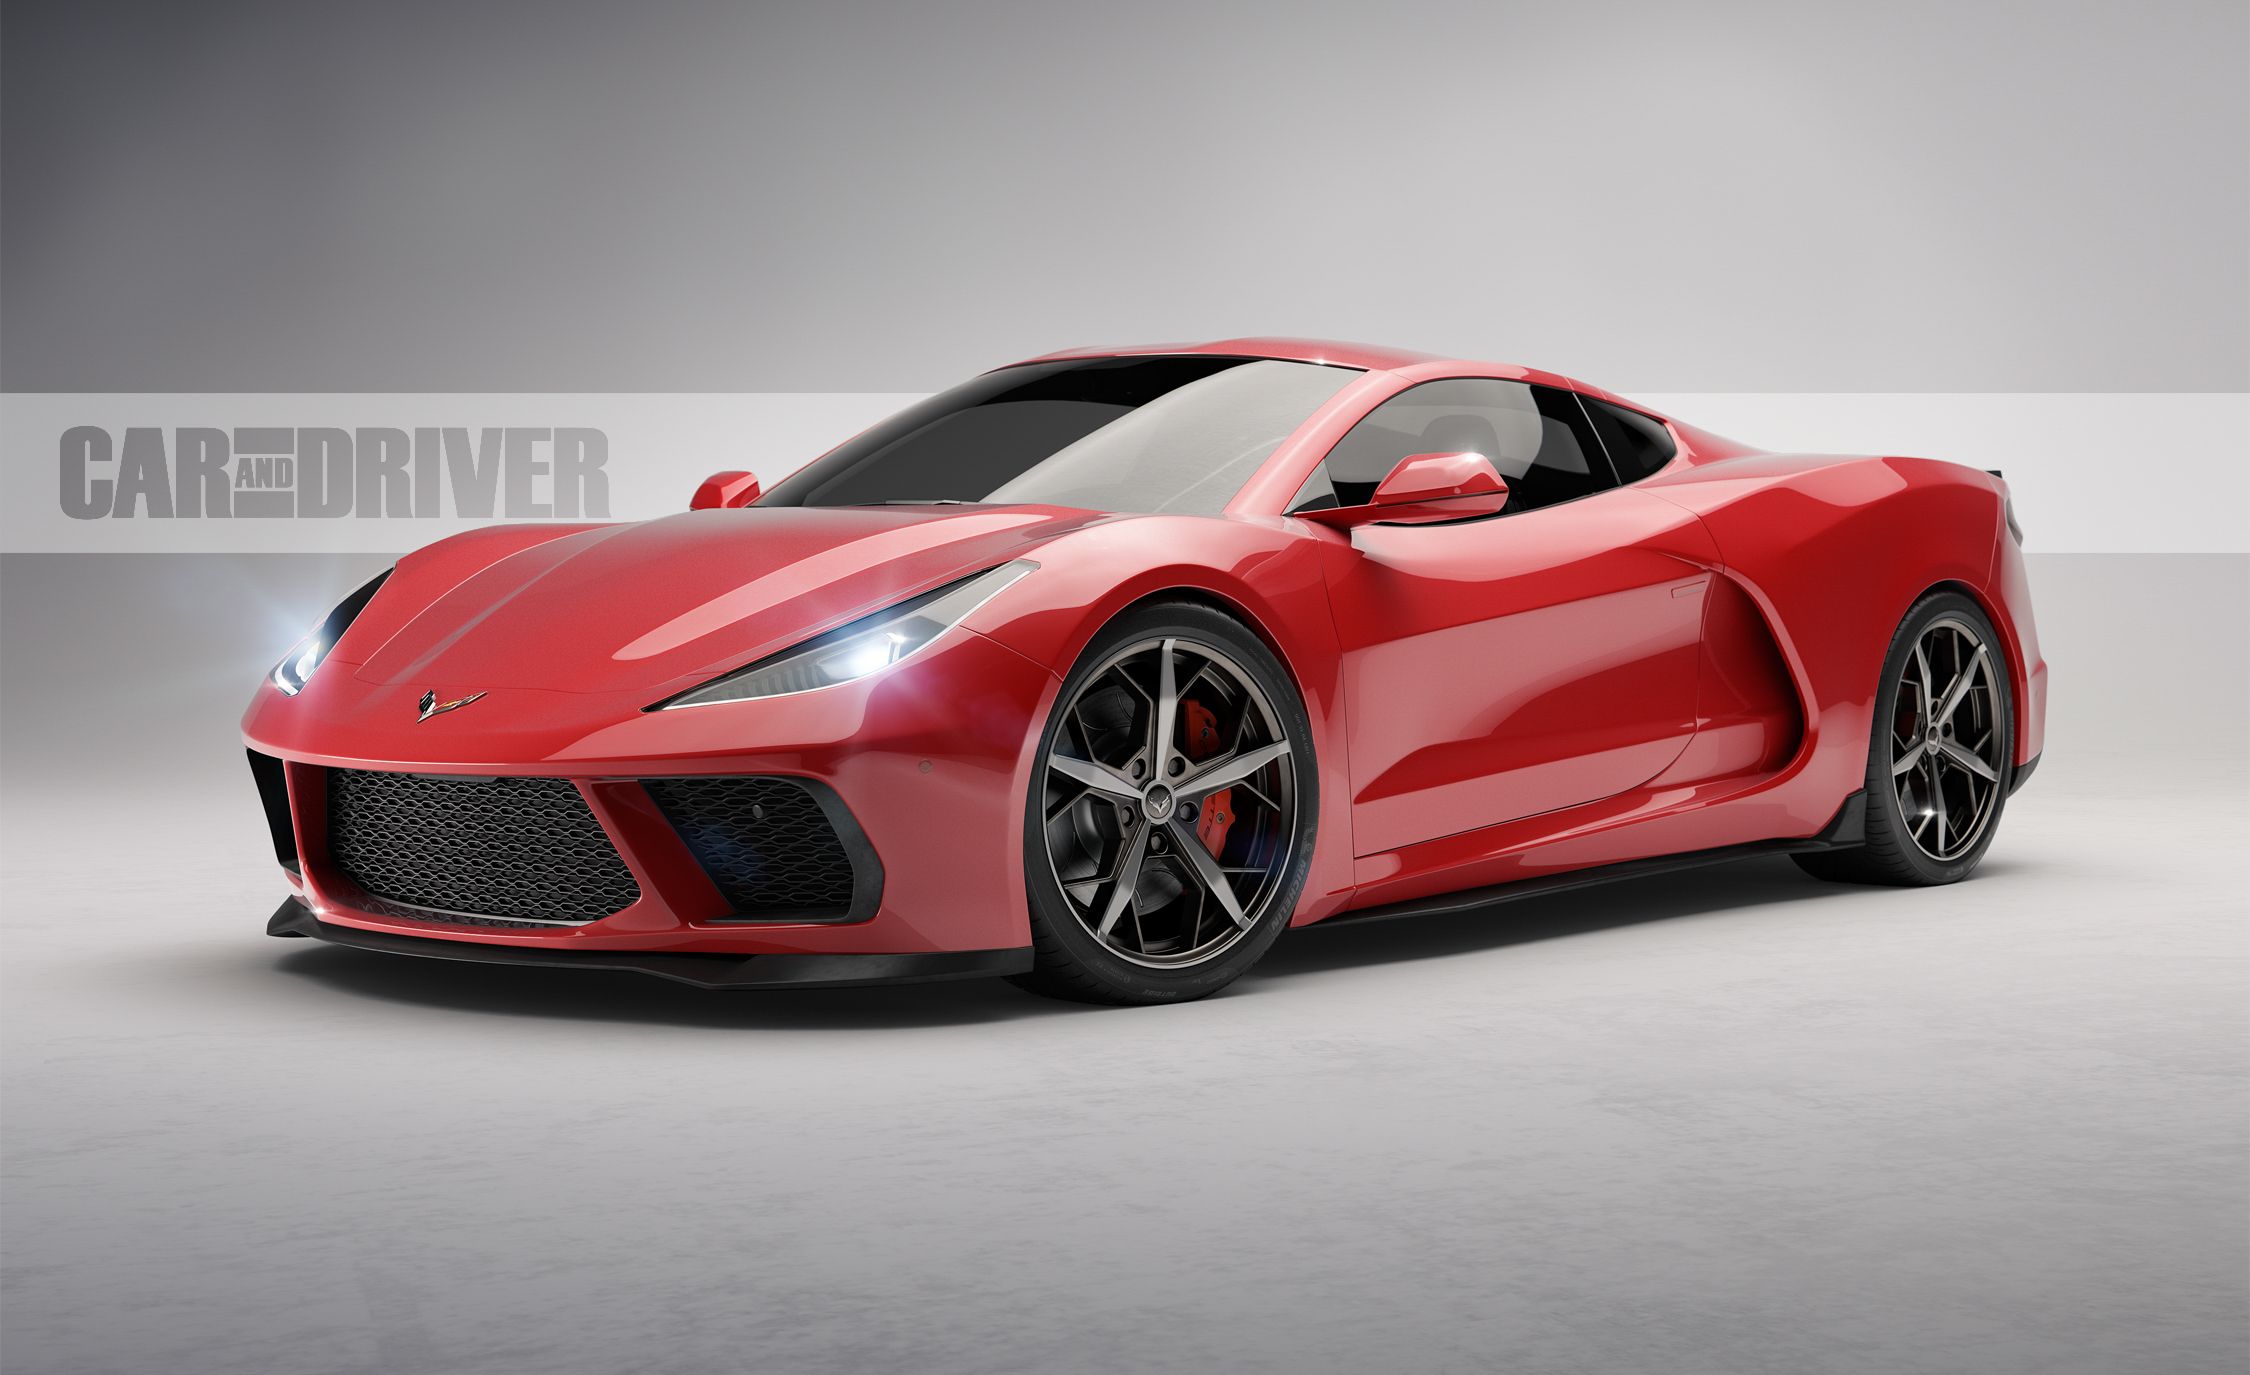 2020-chevrolet-corvette-c8-artists-rendering-25-cars-worth-waiting-for-301-1527106174.jpg